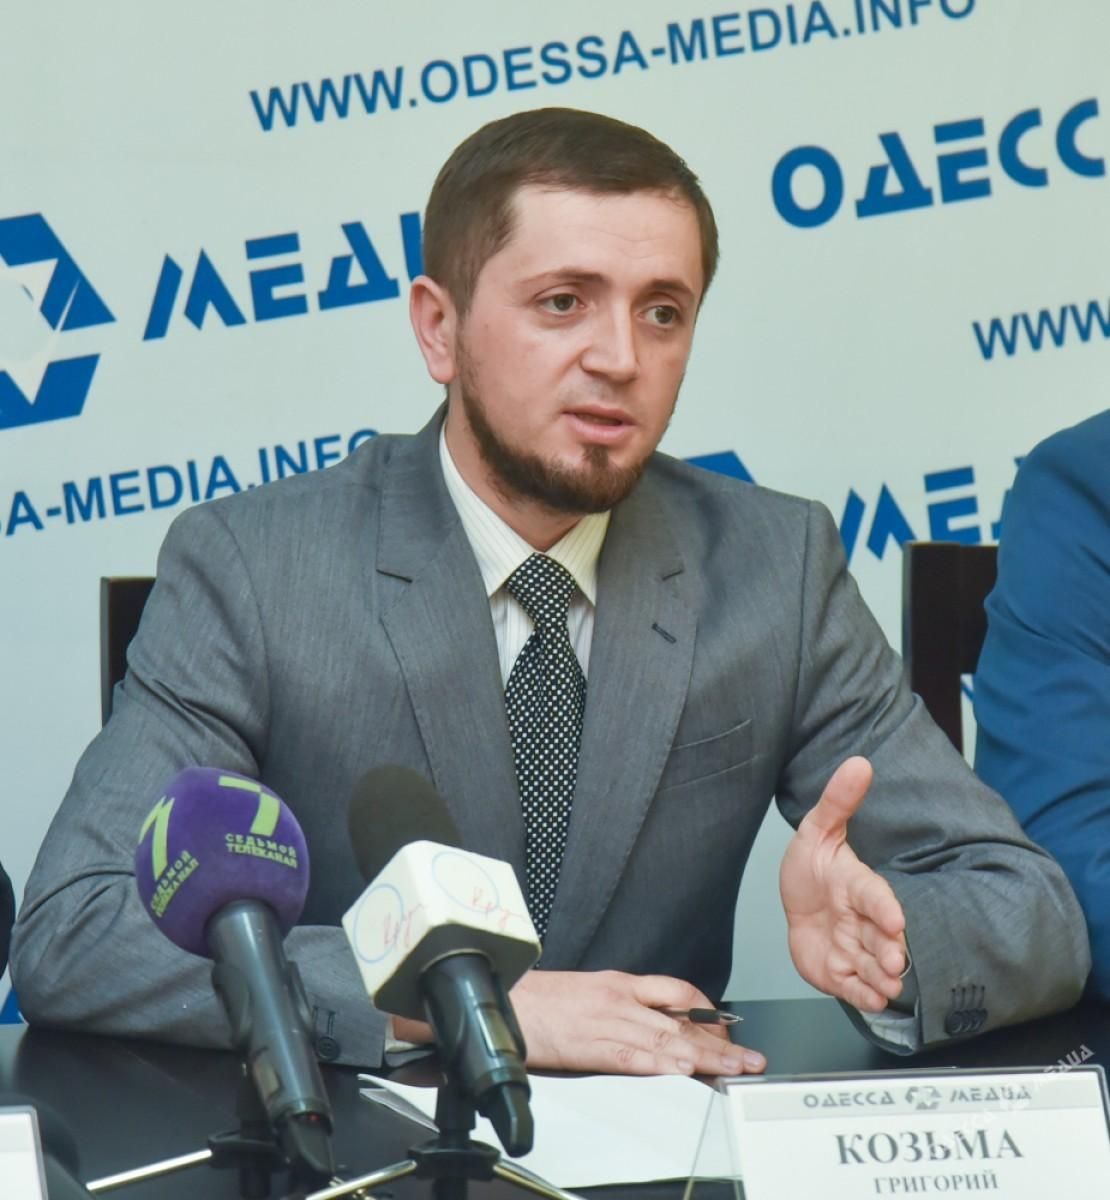 Одеська мерія може взяти на себе функції окремої "республіки", – журналіст